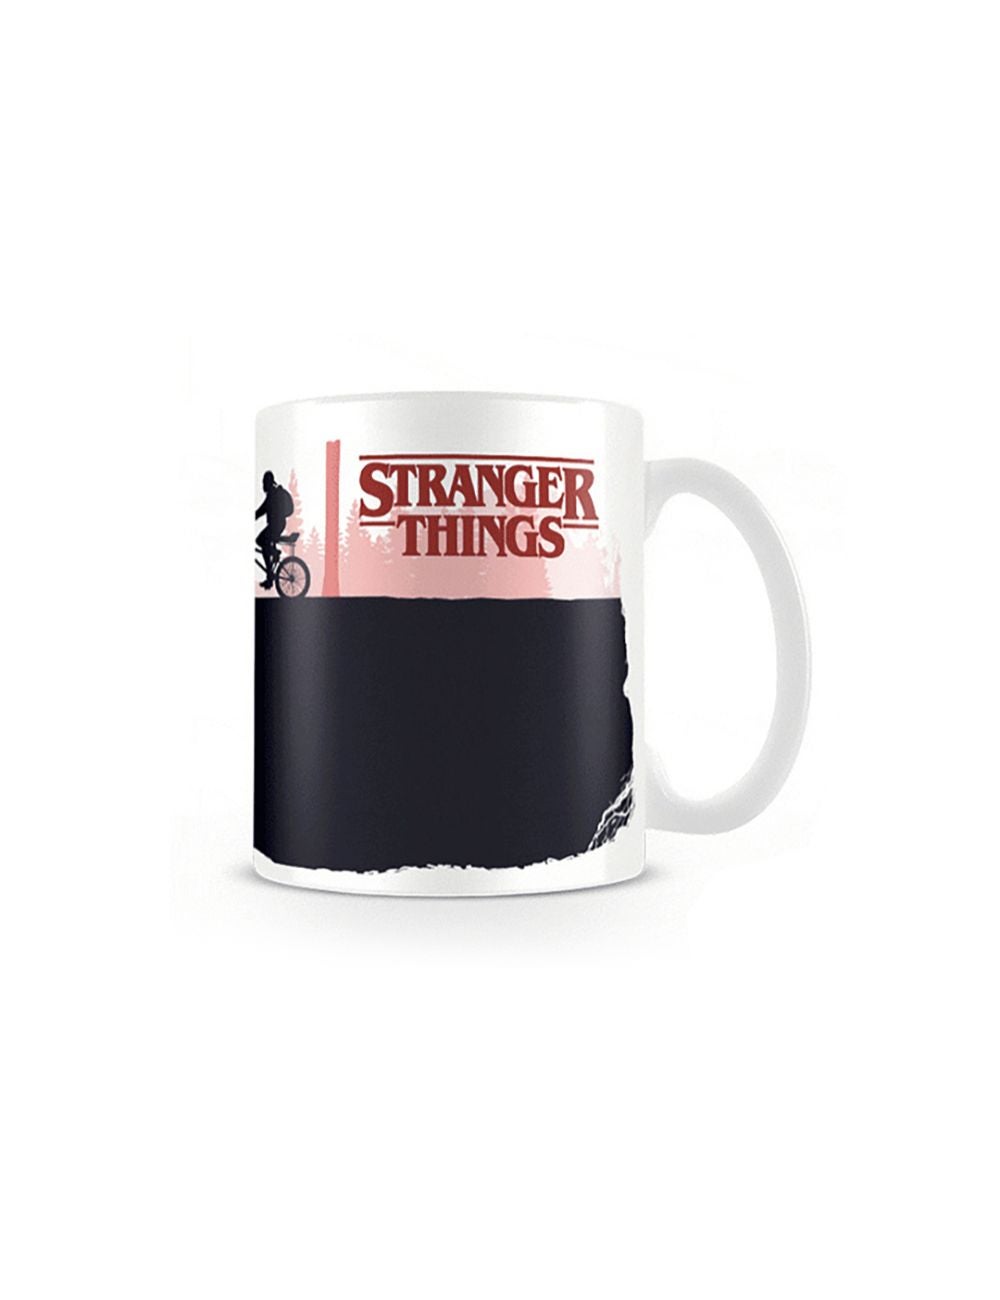 Stranger Things - Upside Down Heat Changing Mug